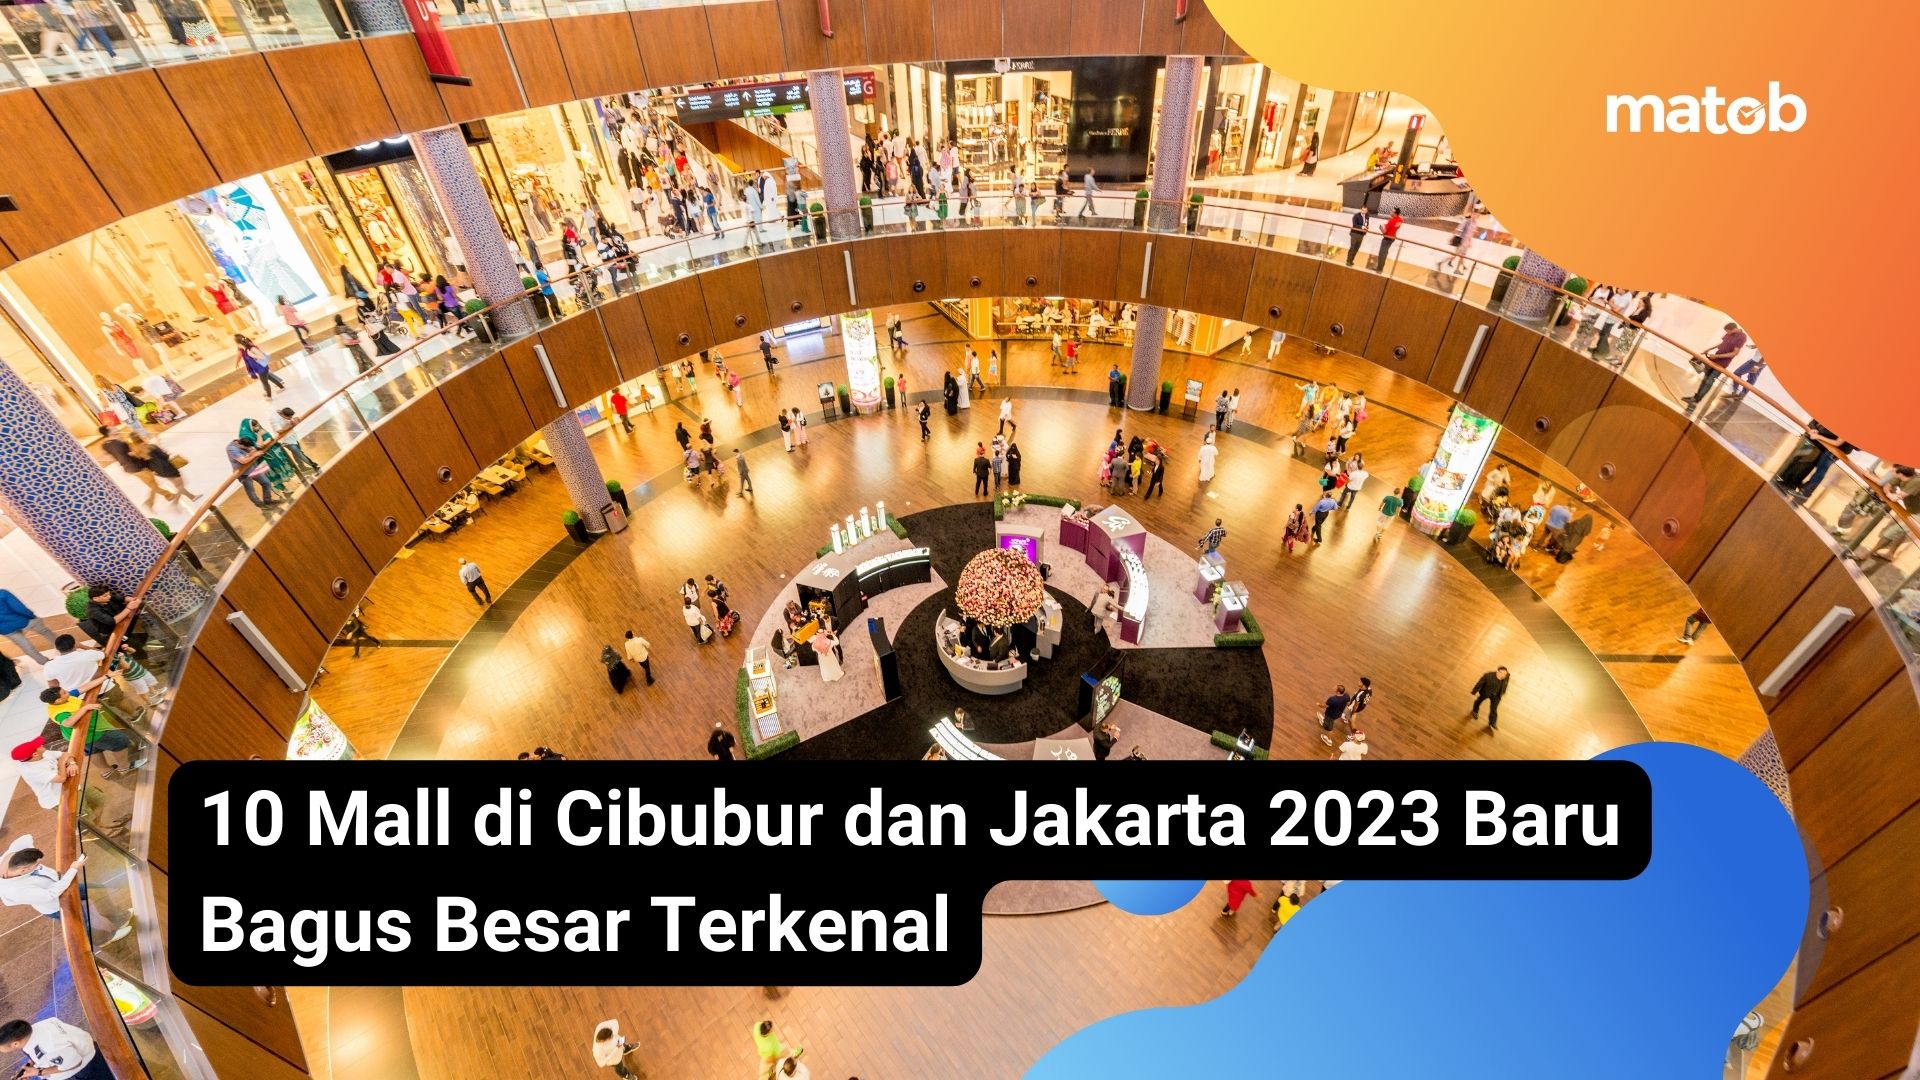 10 Mall di Cibubur dan Jakarta 2023 Baru Bagus Besar Terkenal